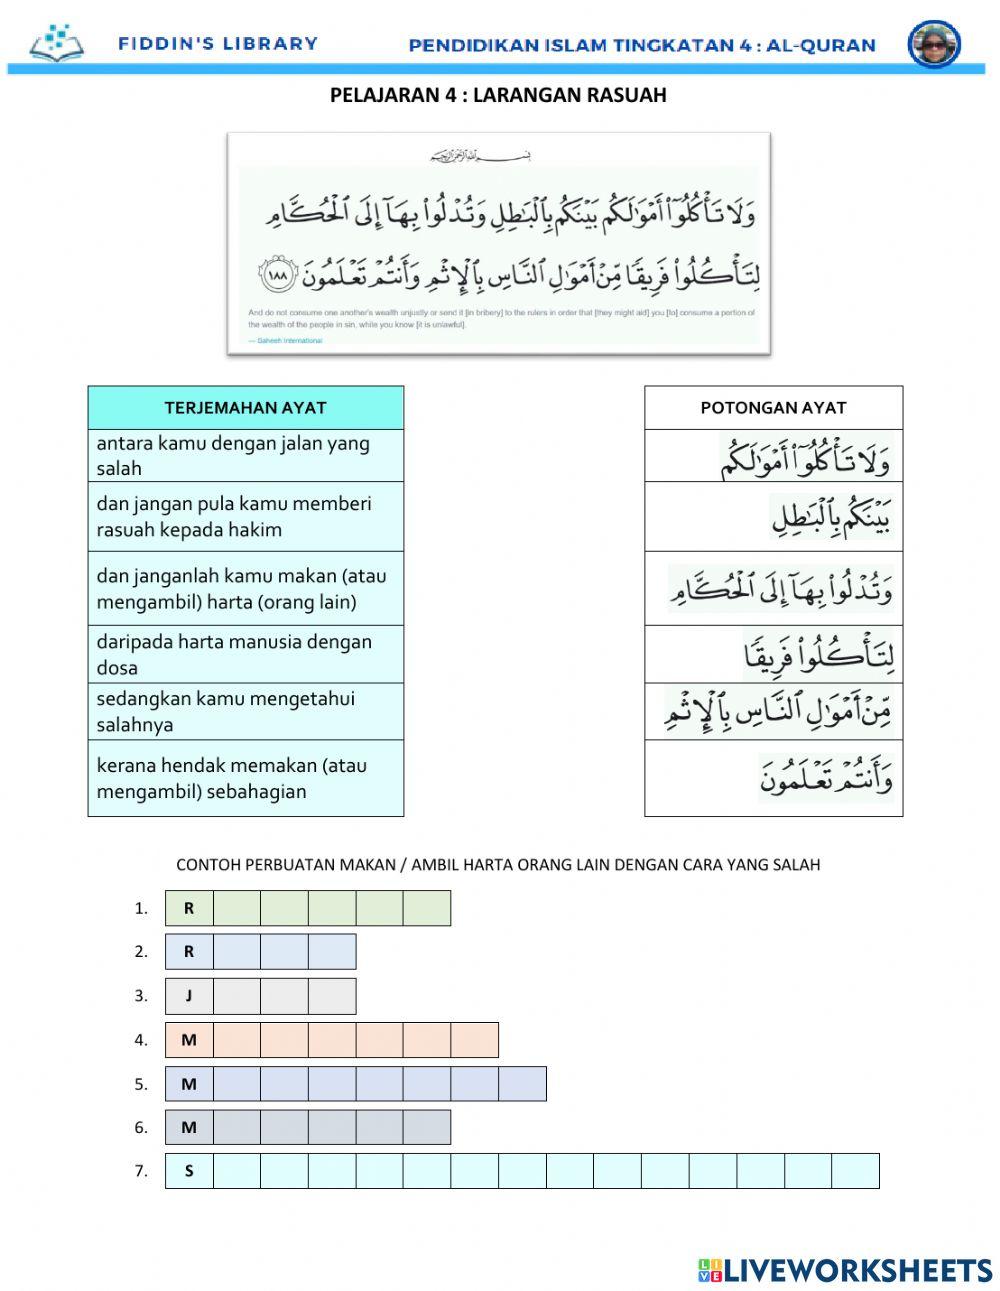 Al-Quran T4 - Larangan Rasuah